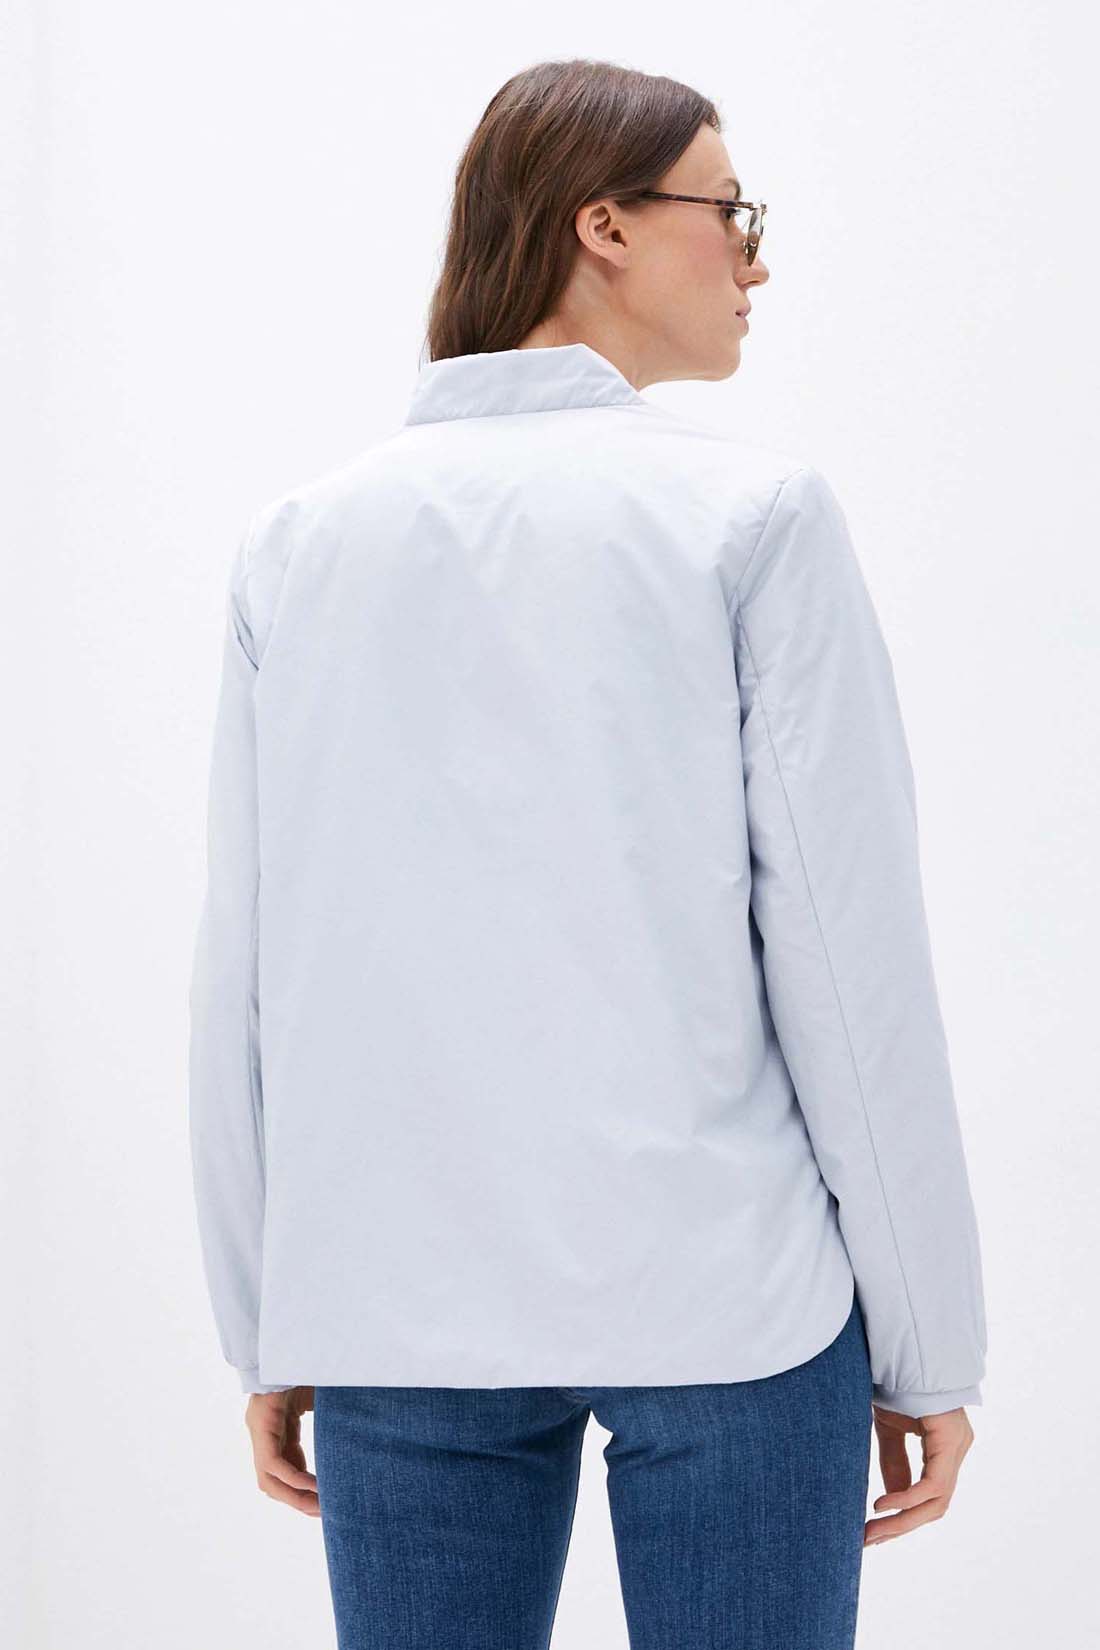 Куртка (арт. baon B031057), размер M, цвет голубой Куртка (арт. baon B031057) - фото 2